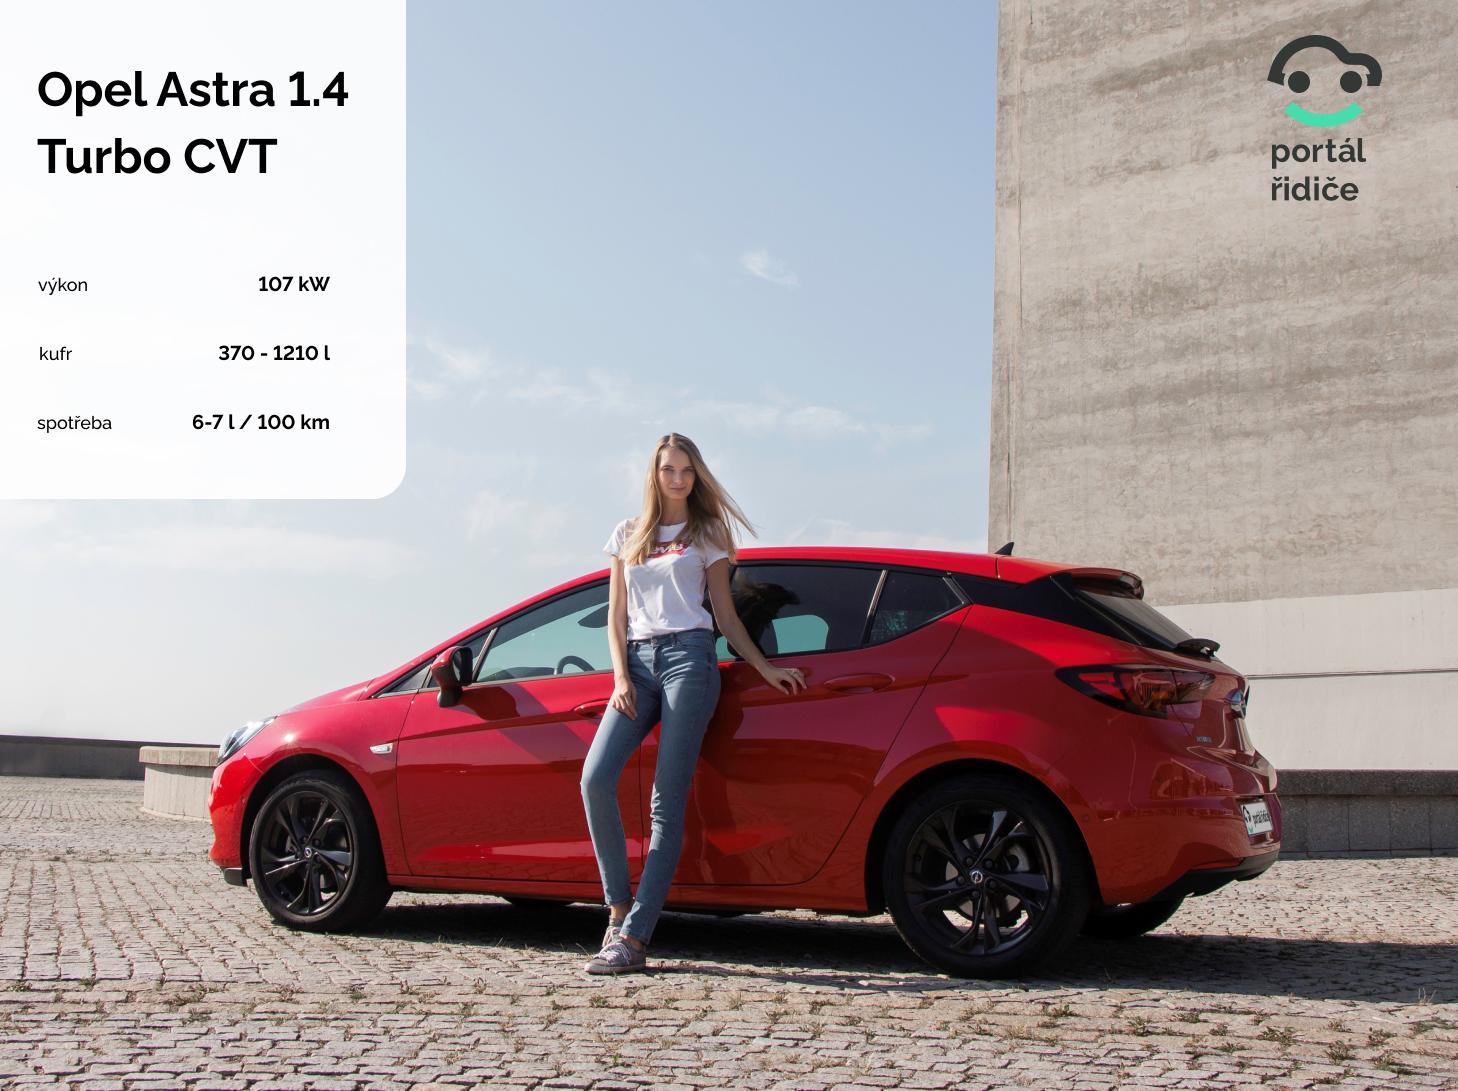 Test: Opel Astra 1.4 Turbo CVT - překvapení z Německa